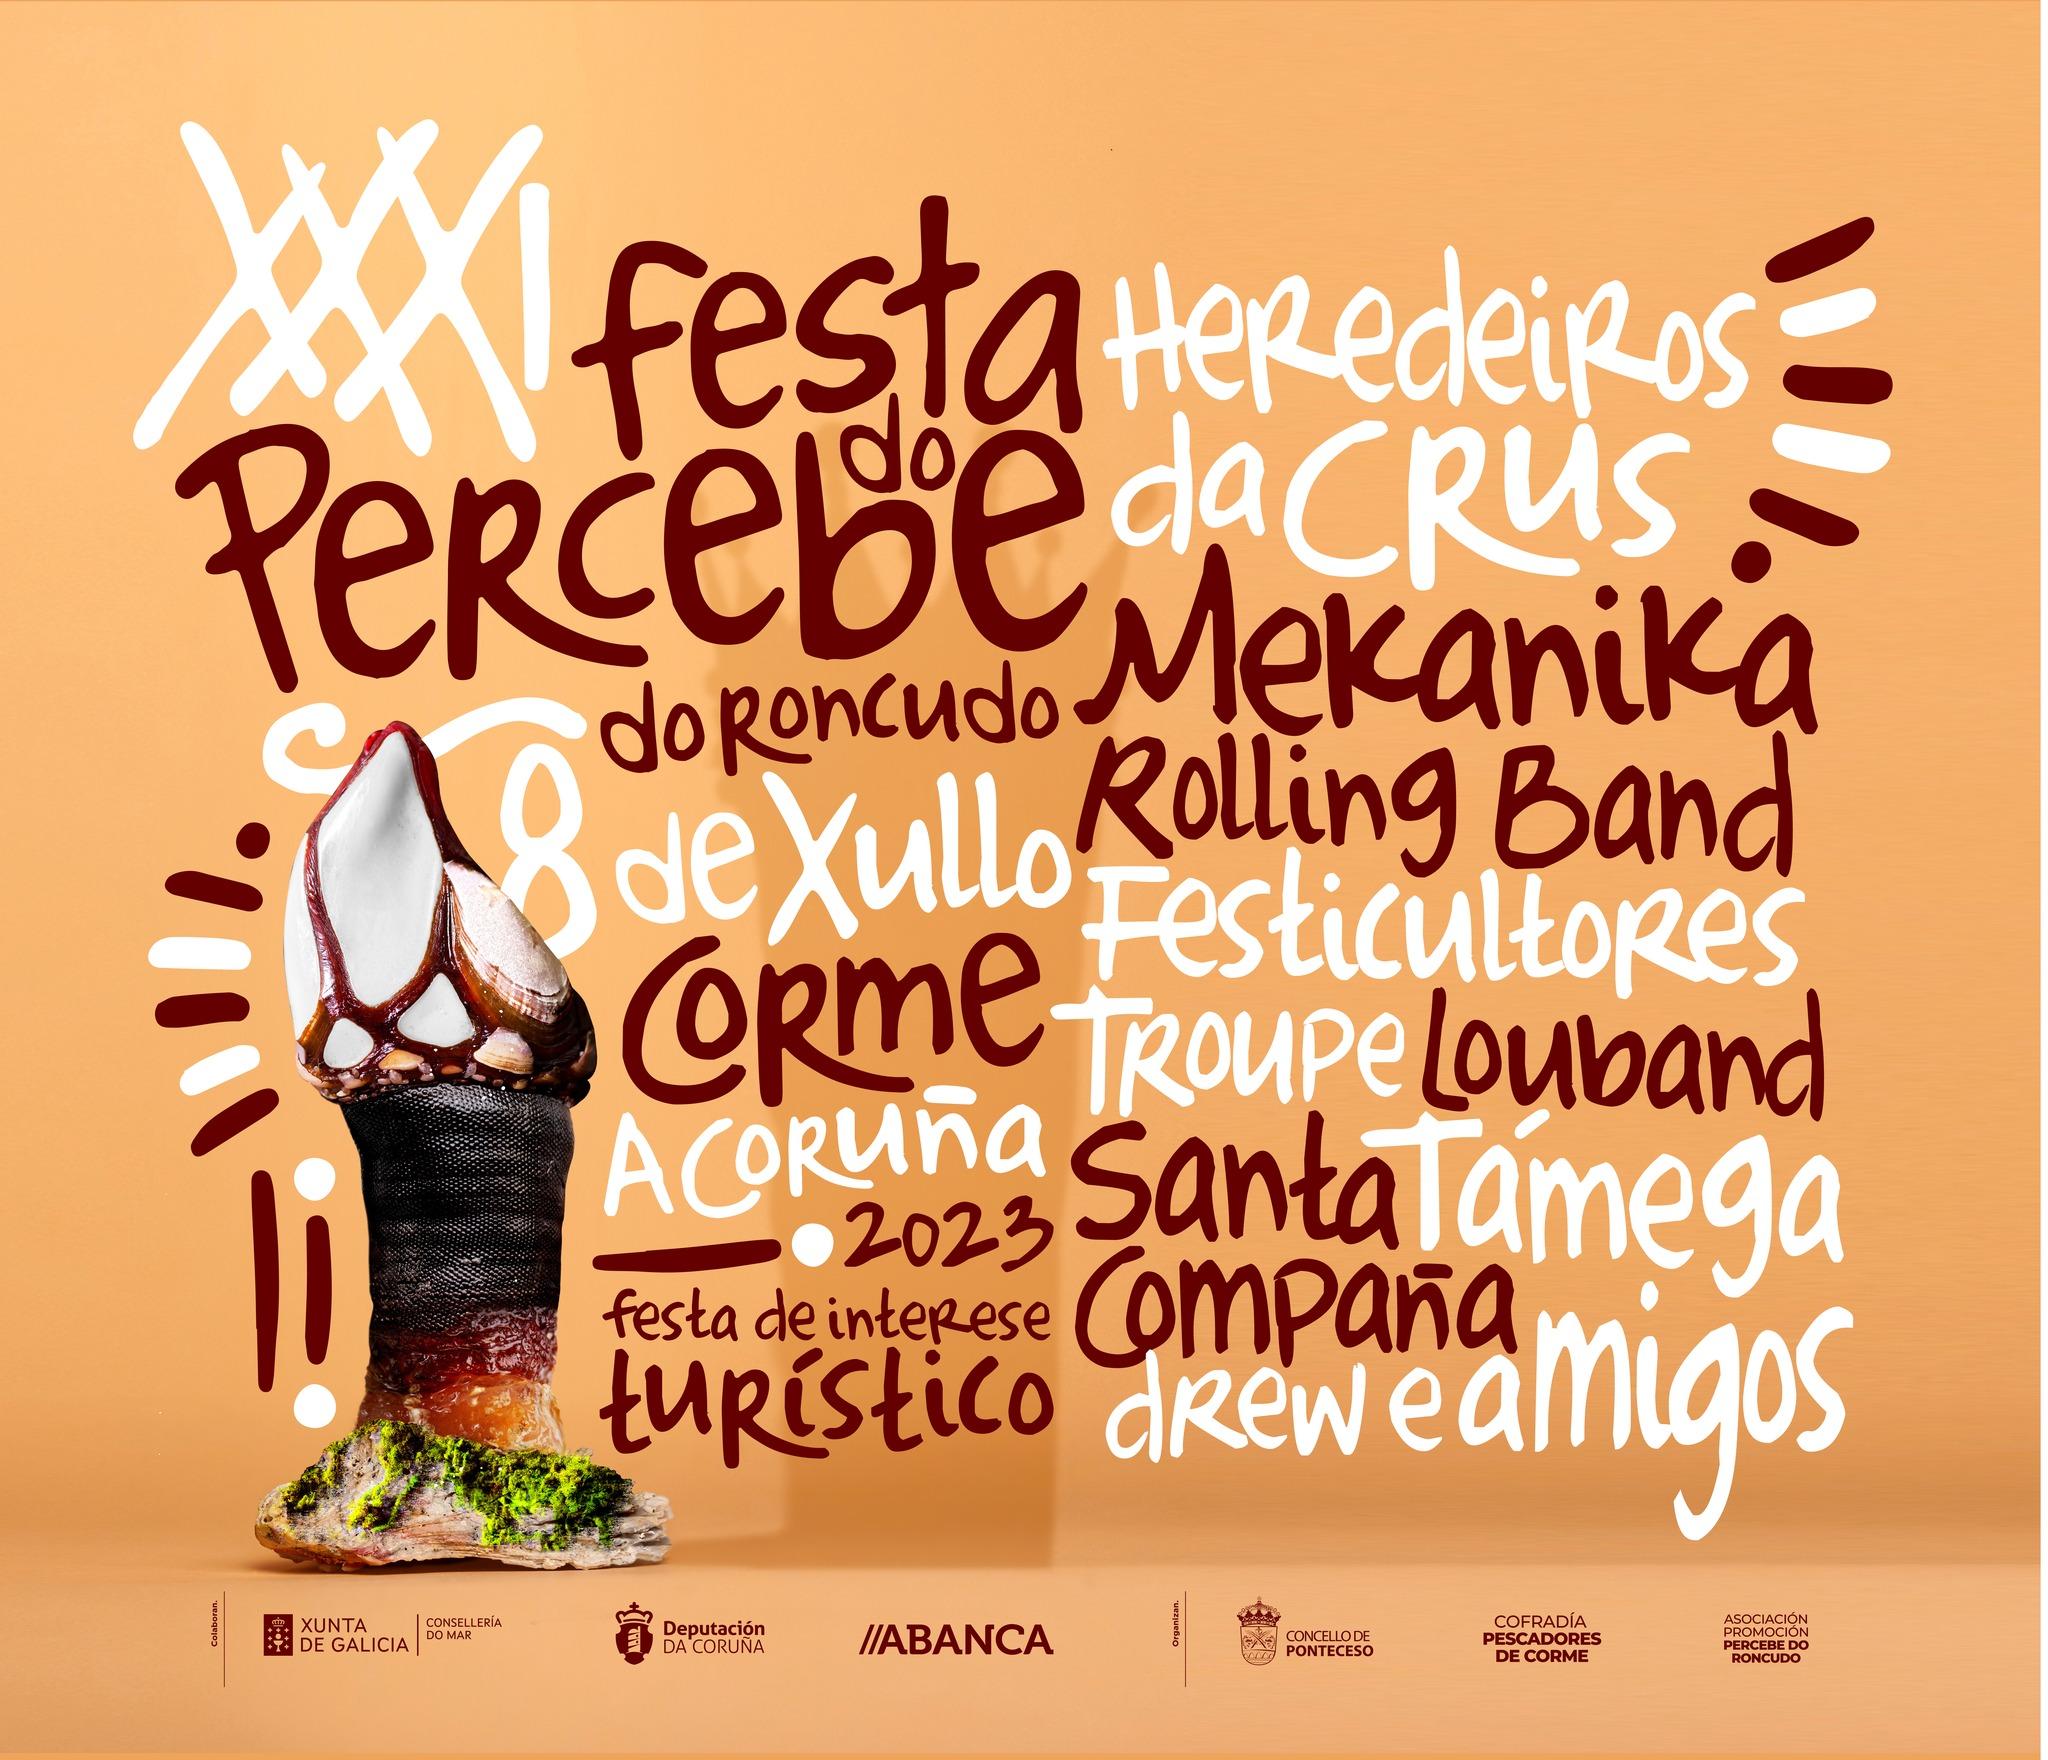 Cartel de la Festa do Percebe do Roncudo (Facebook).